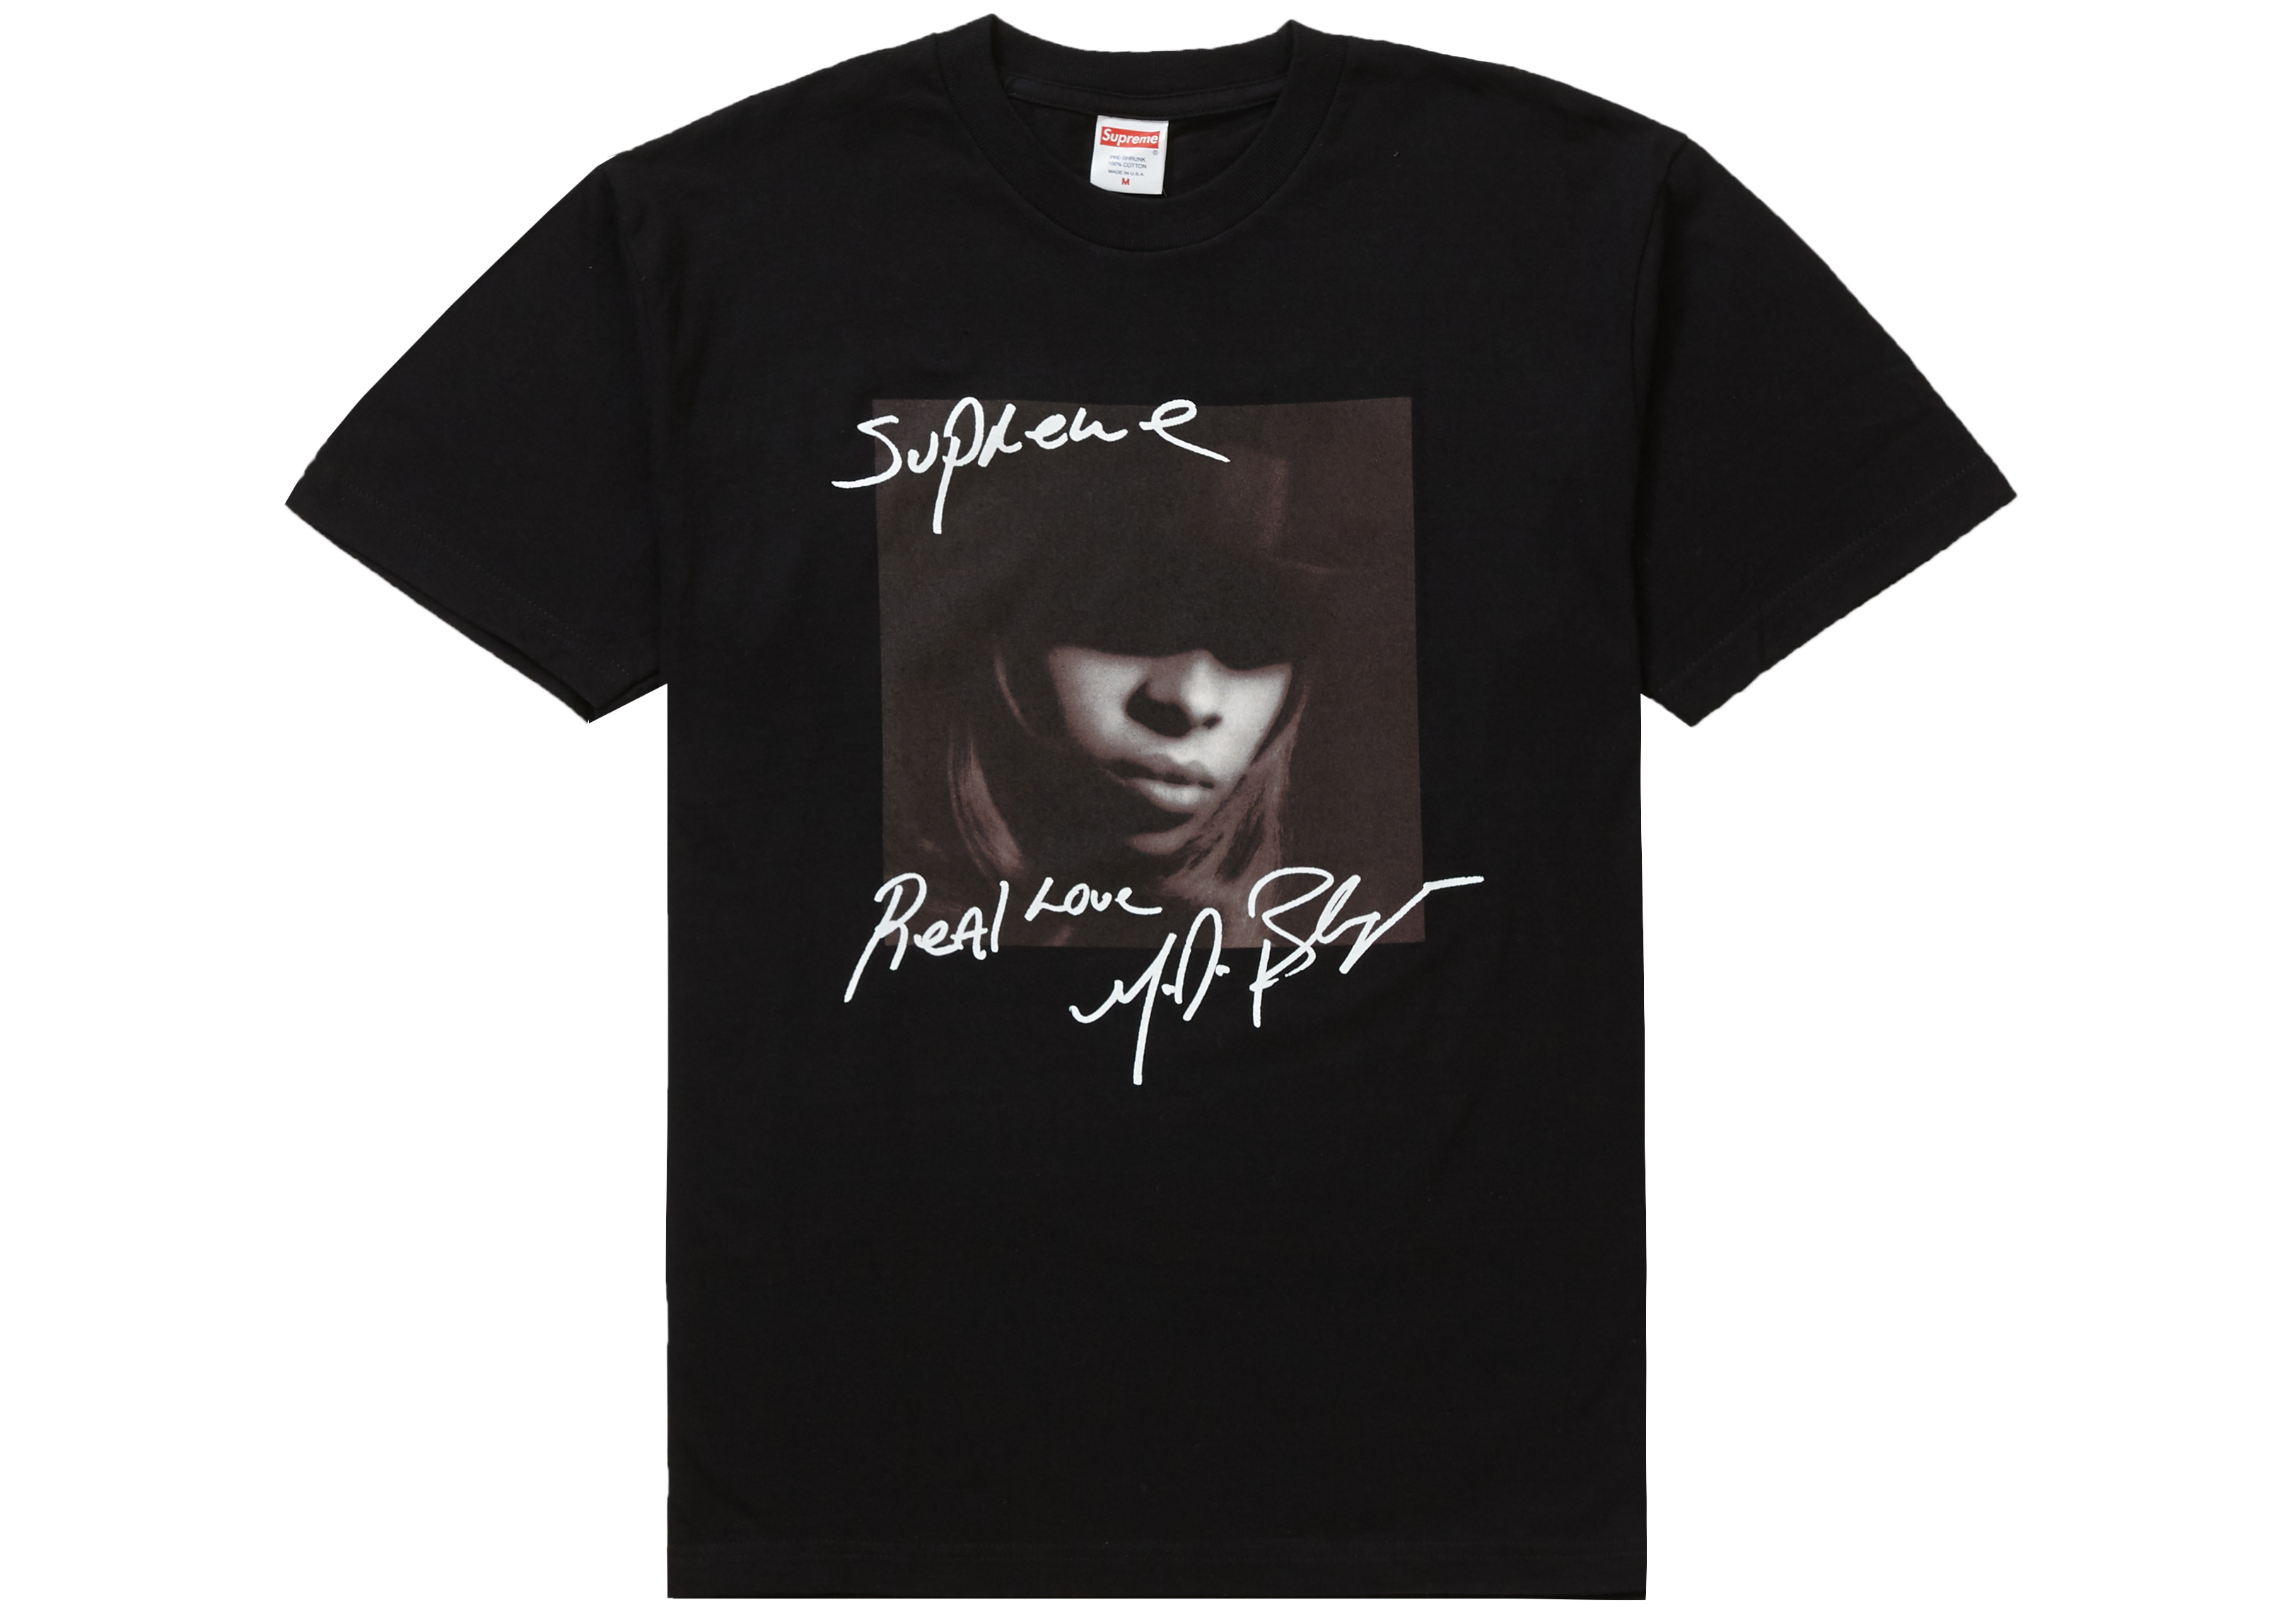 シュプリーム　Mary J. Blige Tee Tシャツ/カットソー(半袖/袖なし) 【現金特価】